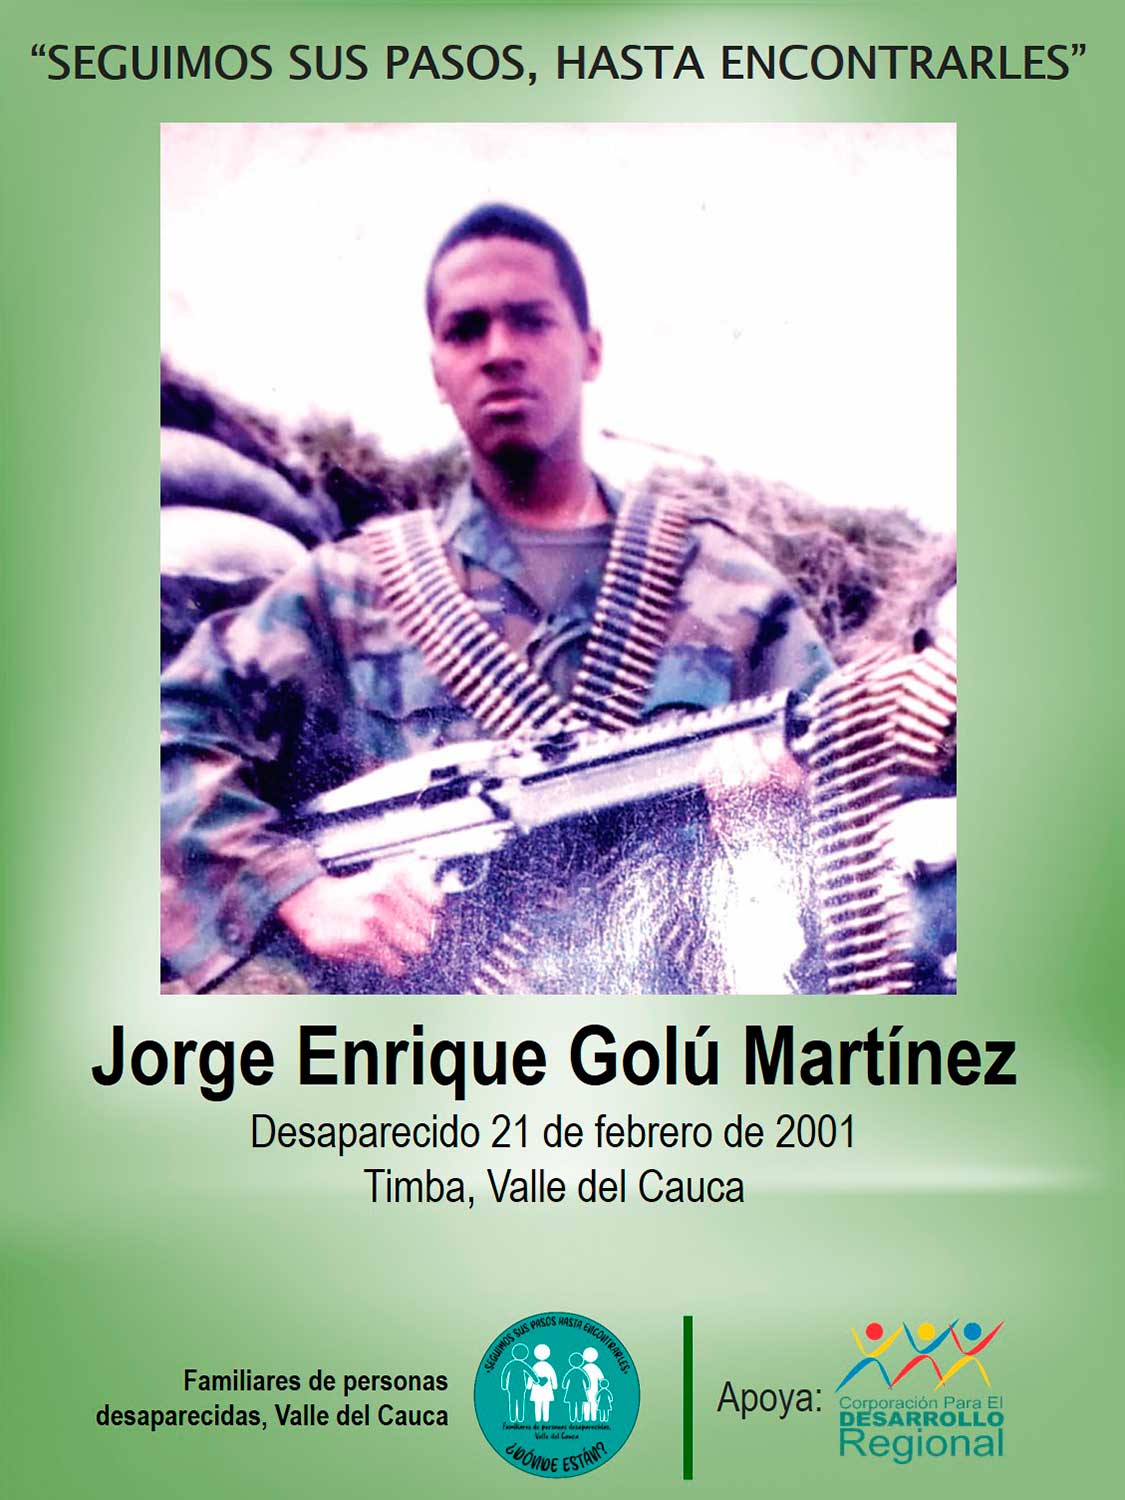 Jorge Enrique Golú Martínez